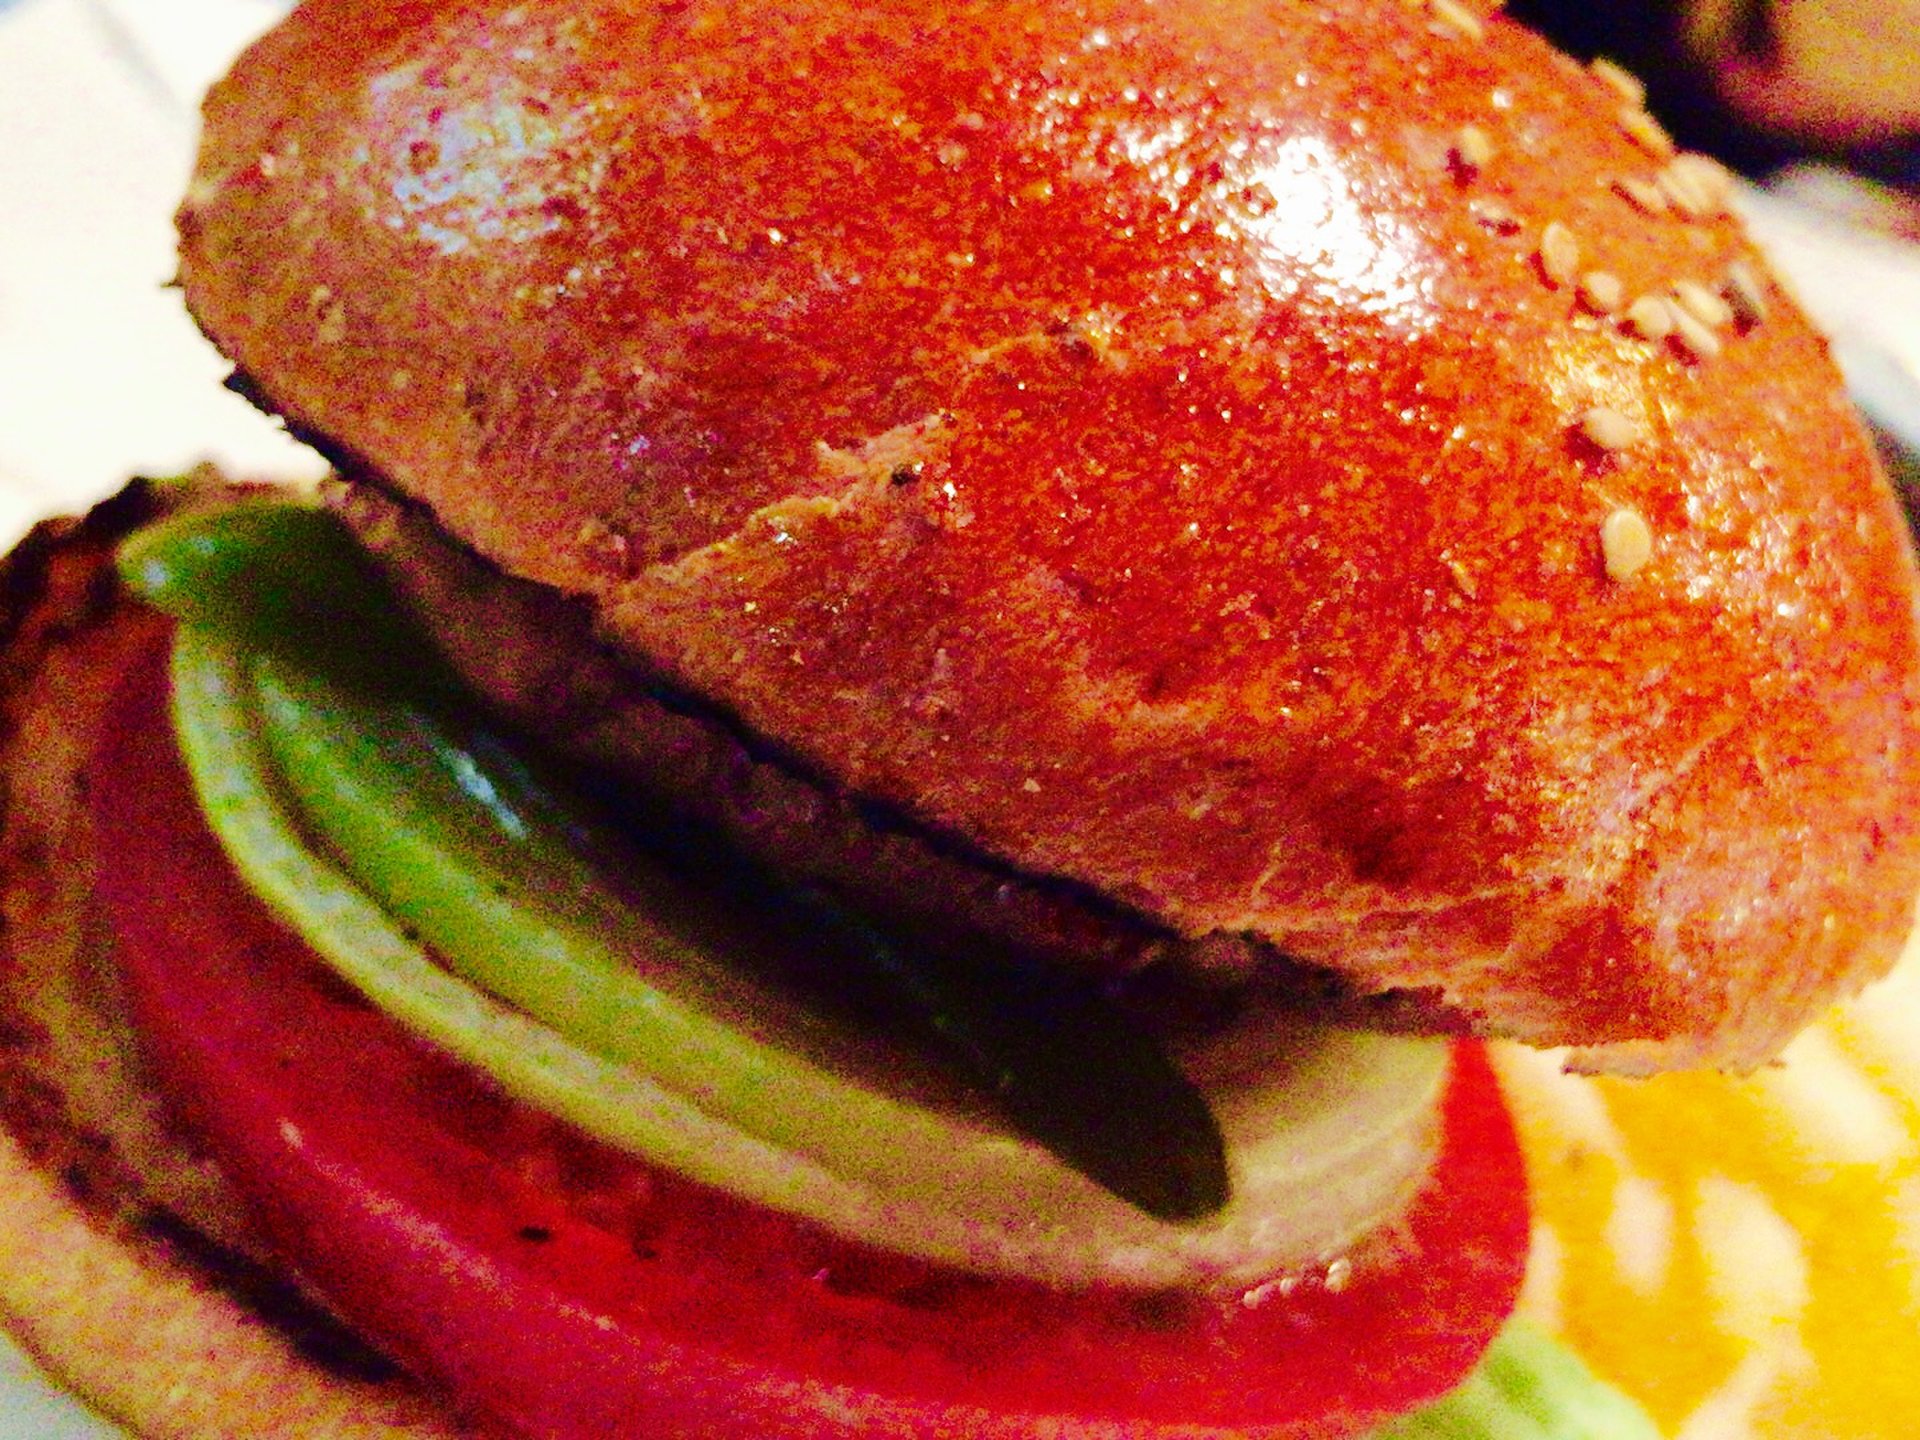 【意外なパンのまち】幡ヶ谷でたべるチェスガーデンのハンバーガーと激安パン屋の幡ヶ谷パンへ